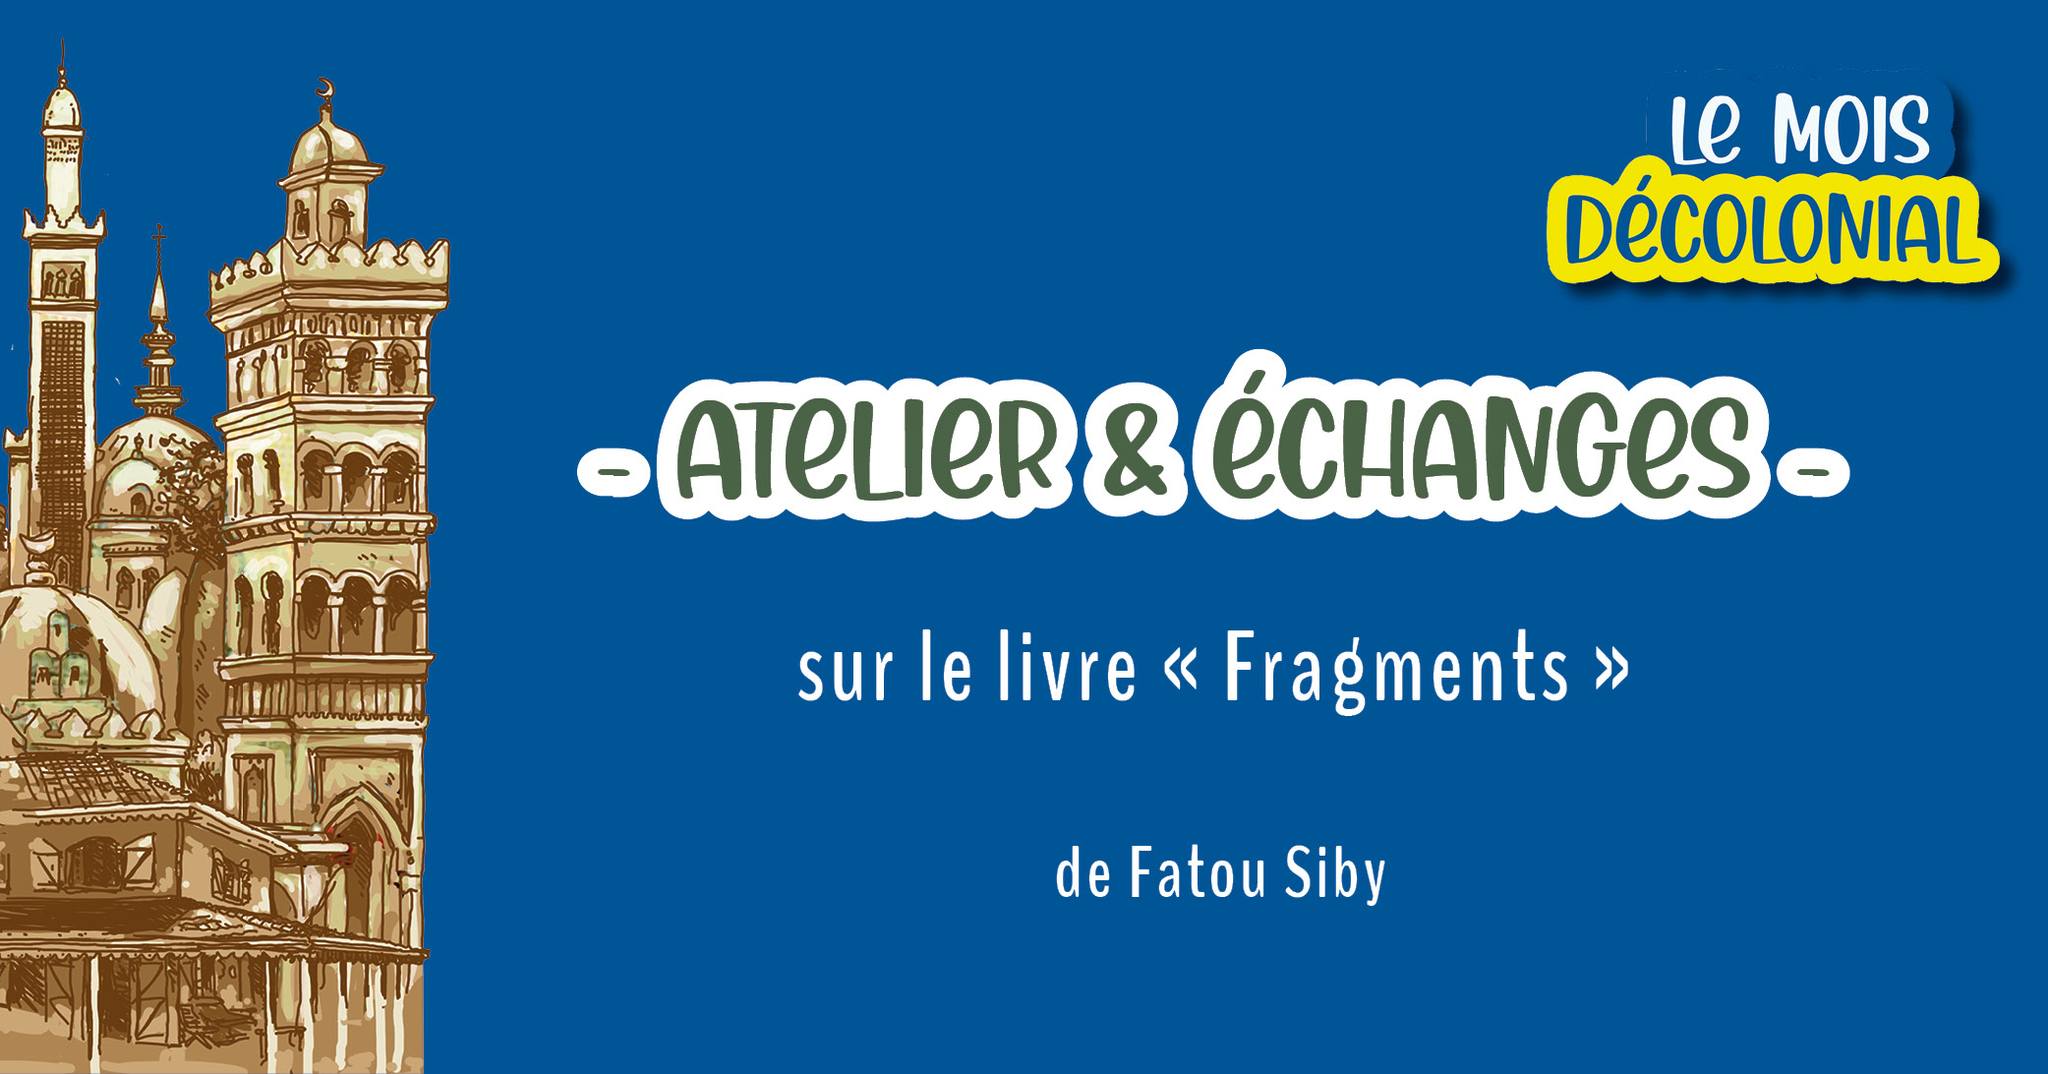 ATELIER & ÉCHANGE • sur le livre « Fragments » de Fatou Siby